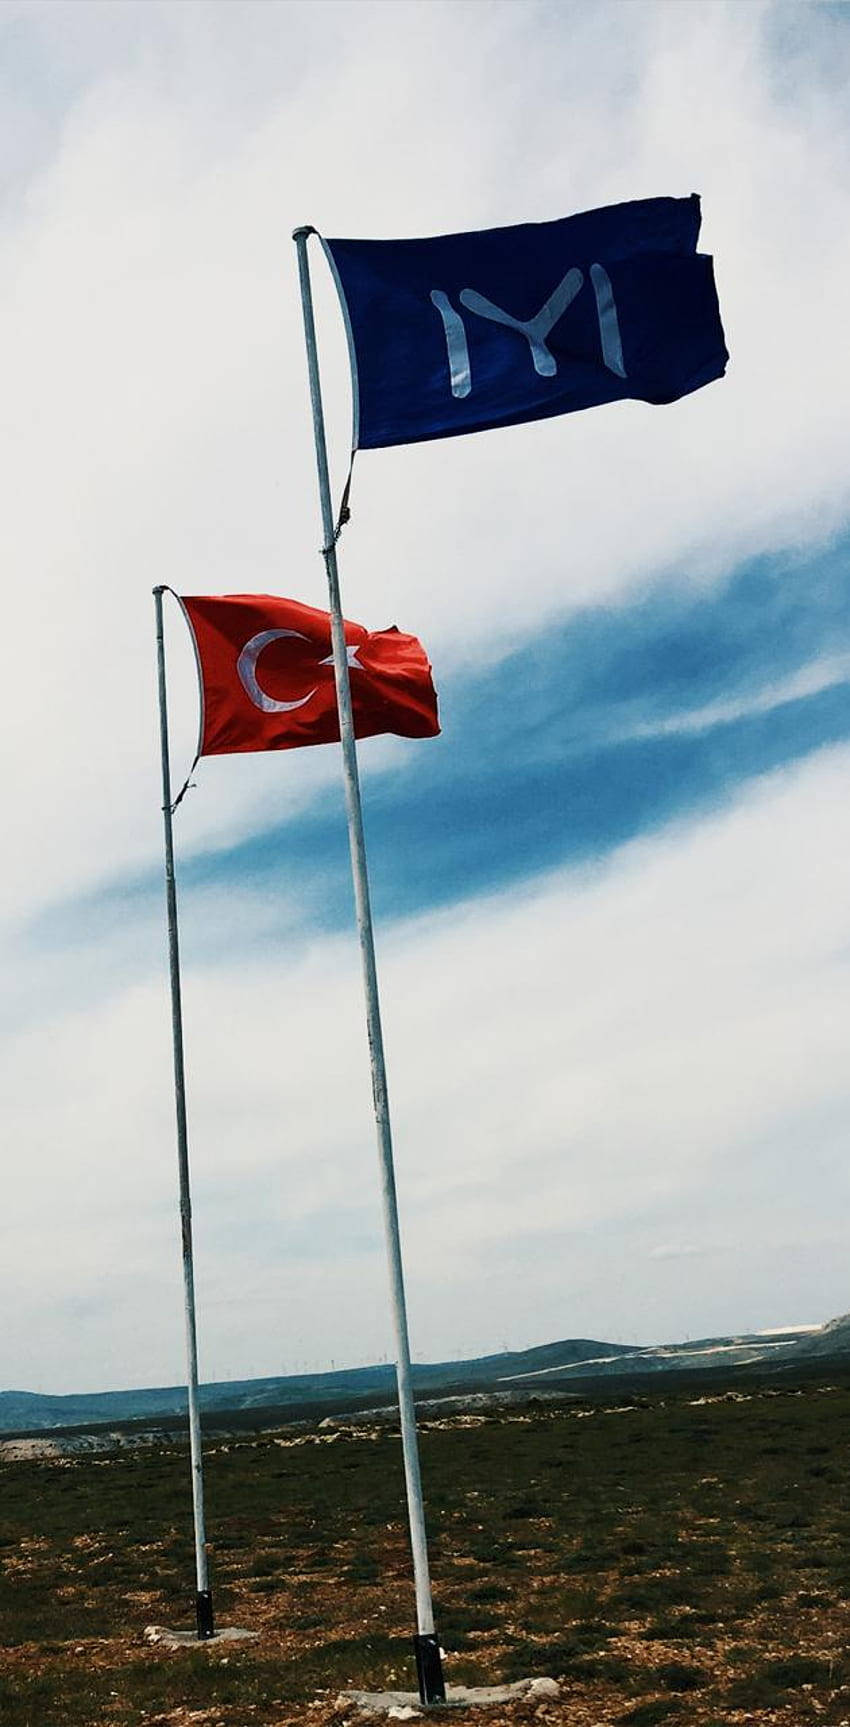 Kayistamm Und Türkeiflaggen Wallpaper